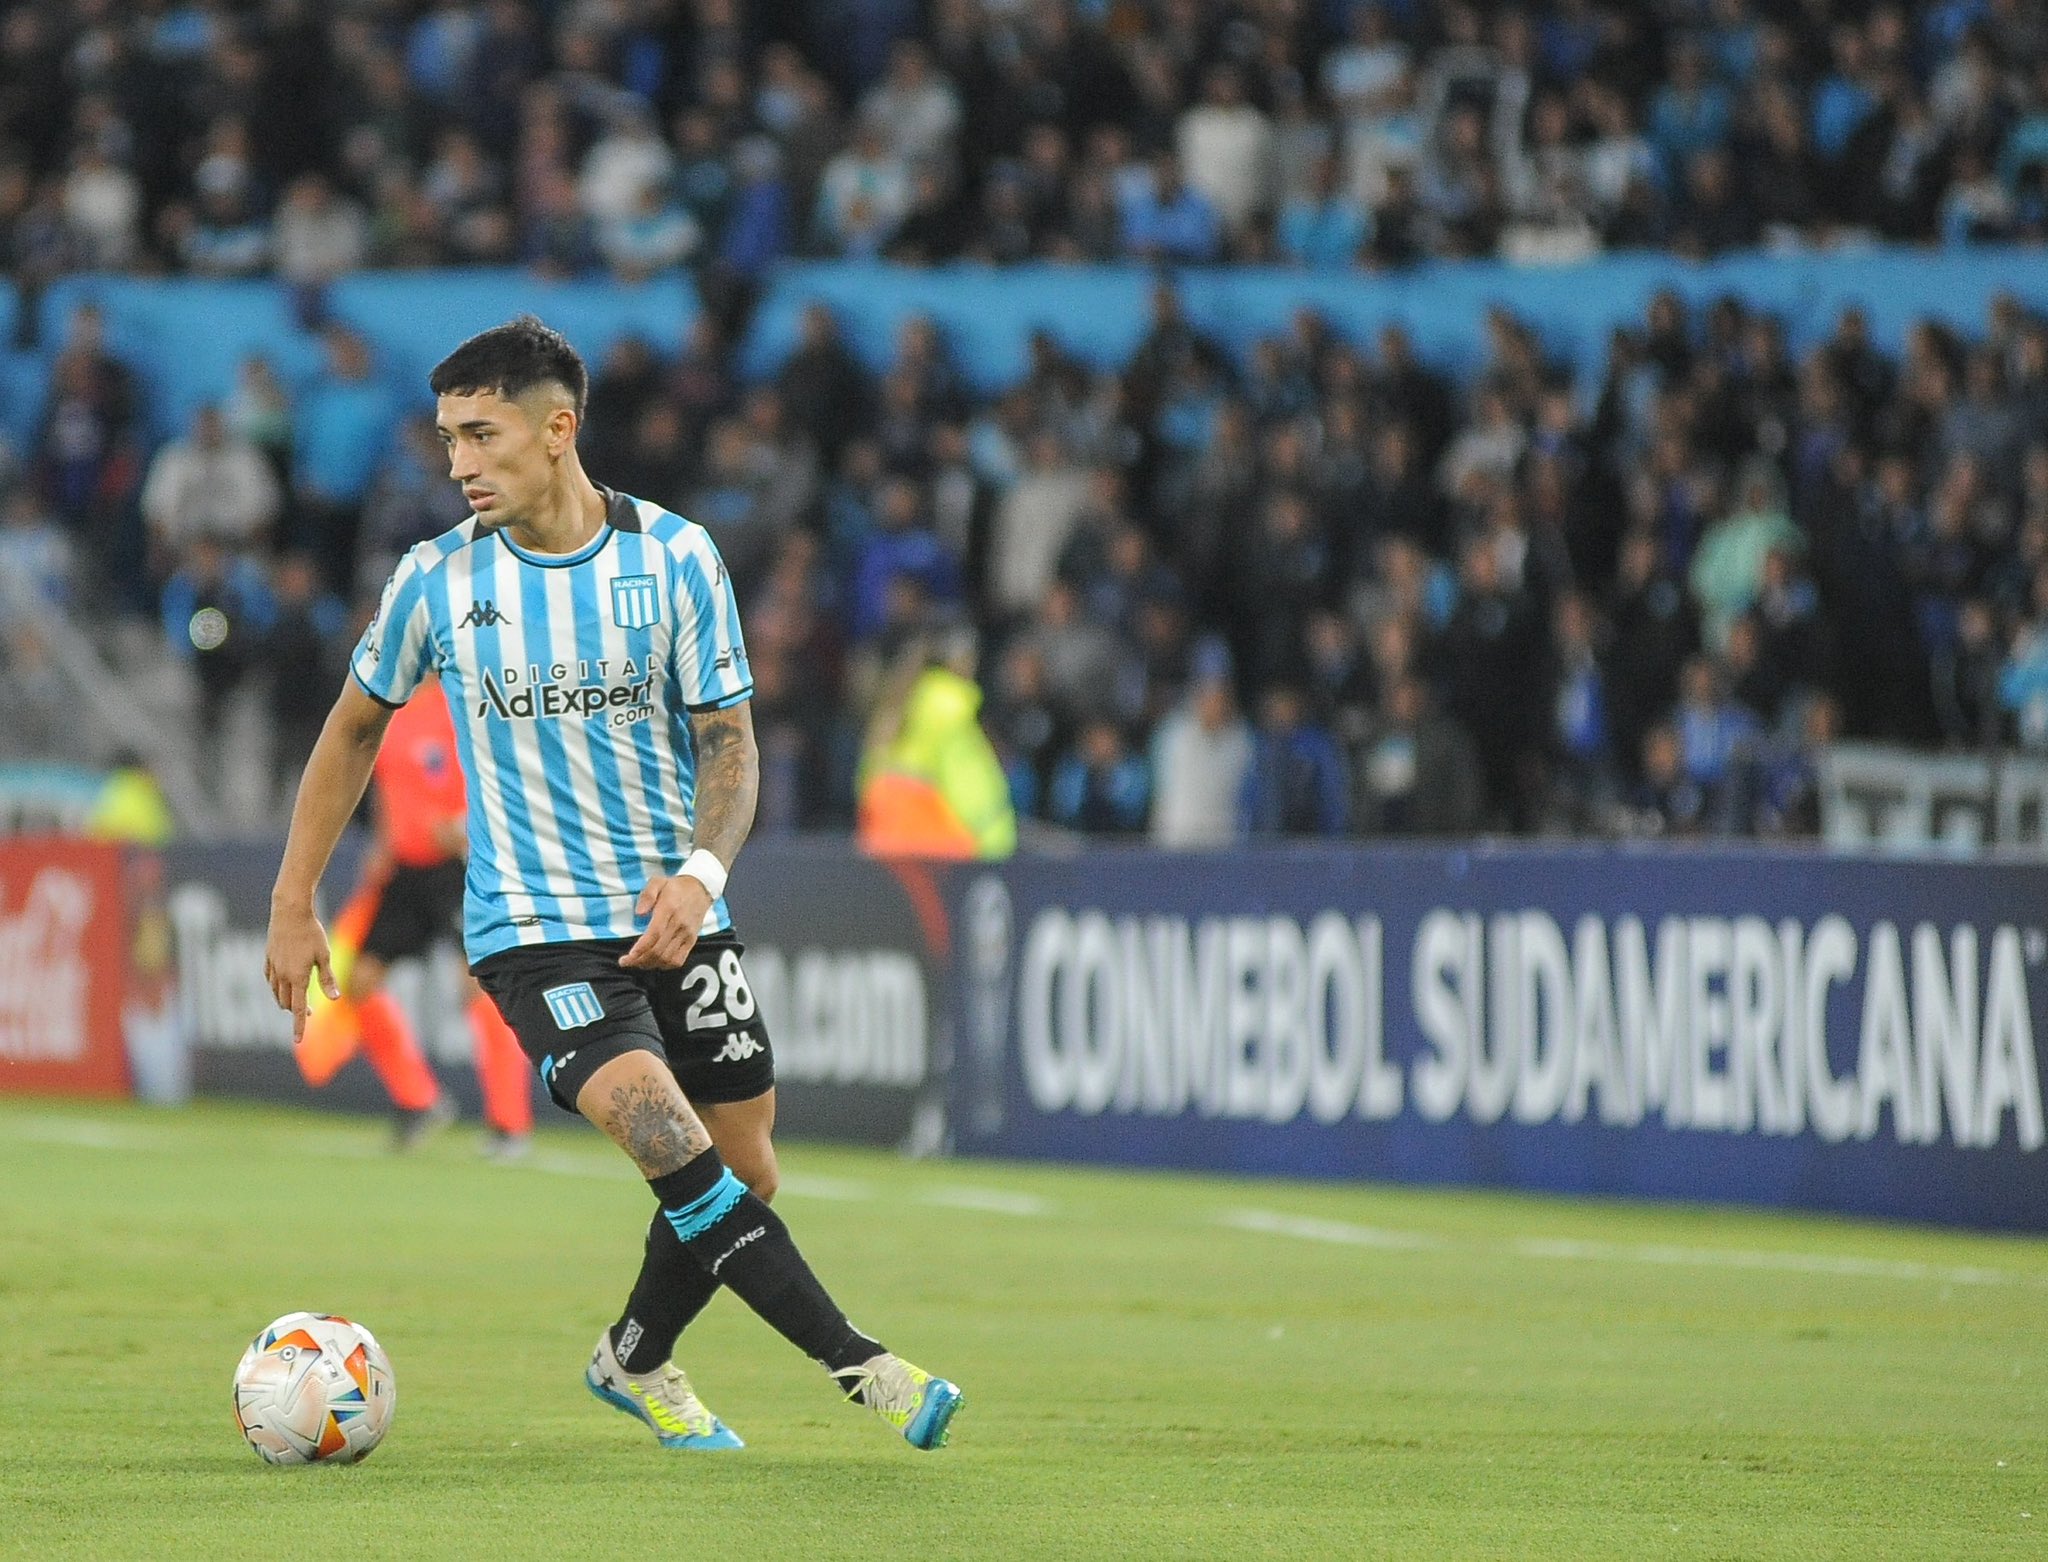 Racing ganó a Bragantino y sigue firme en la Copa Sudamericana | Canal Showsport